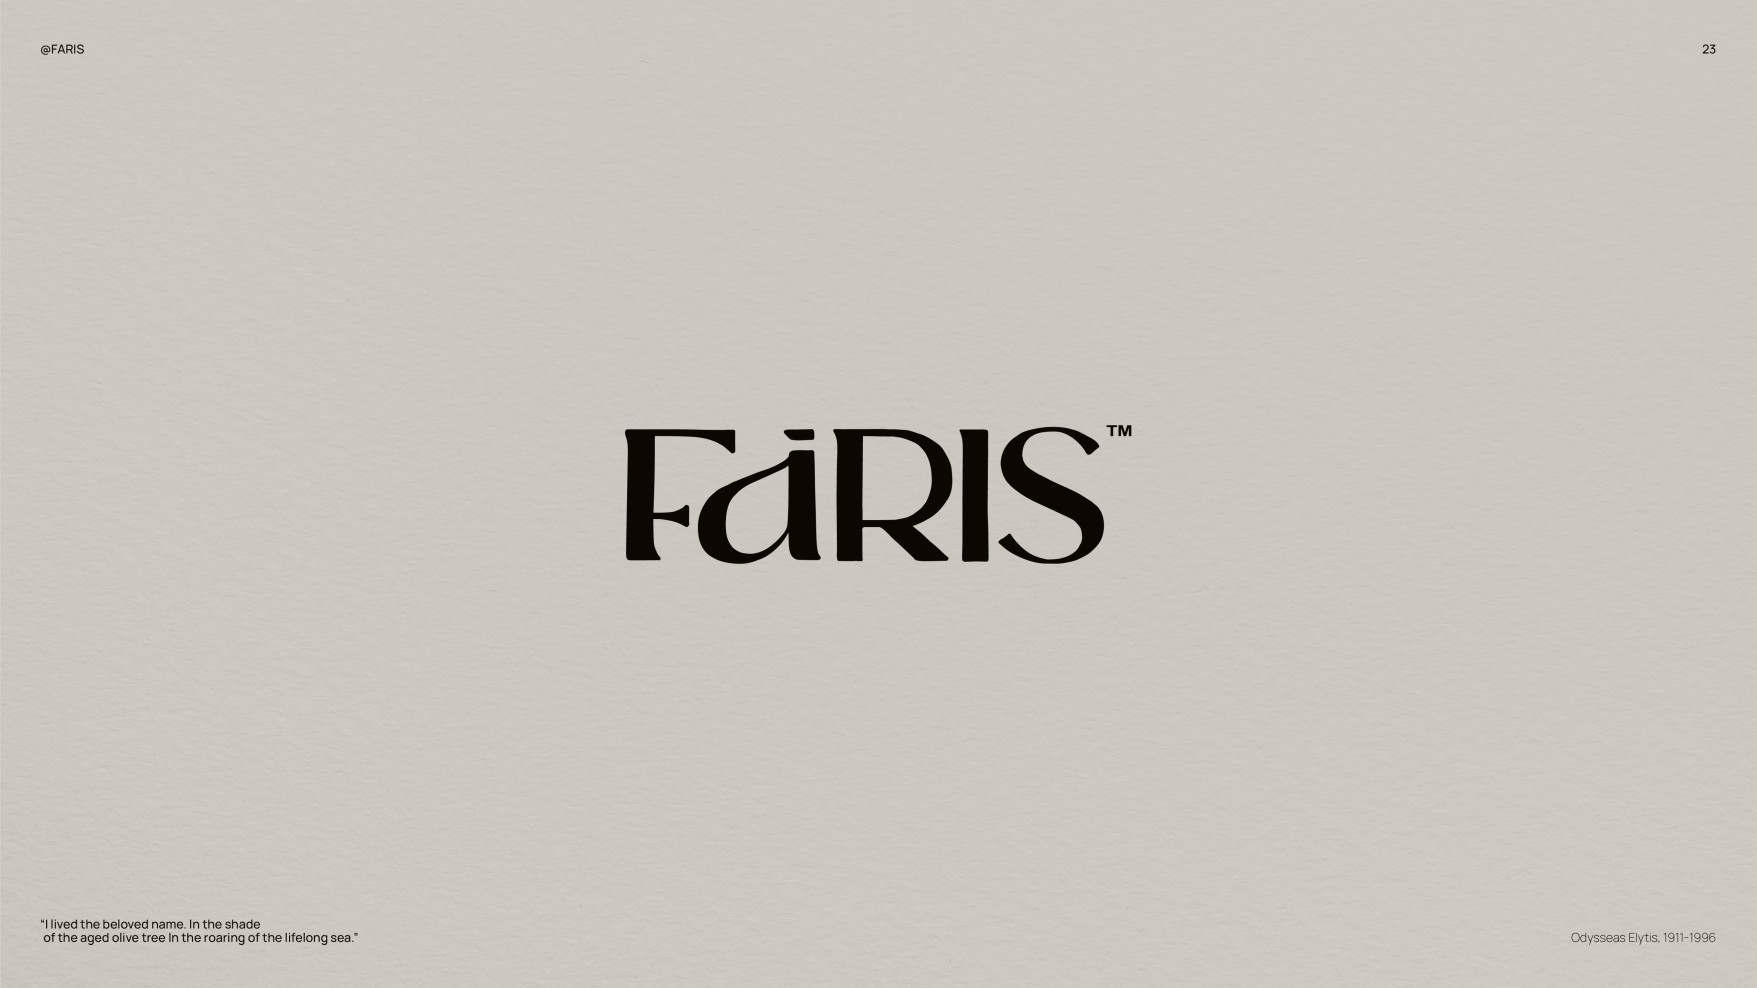  faris-01